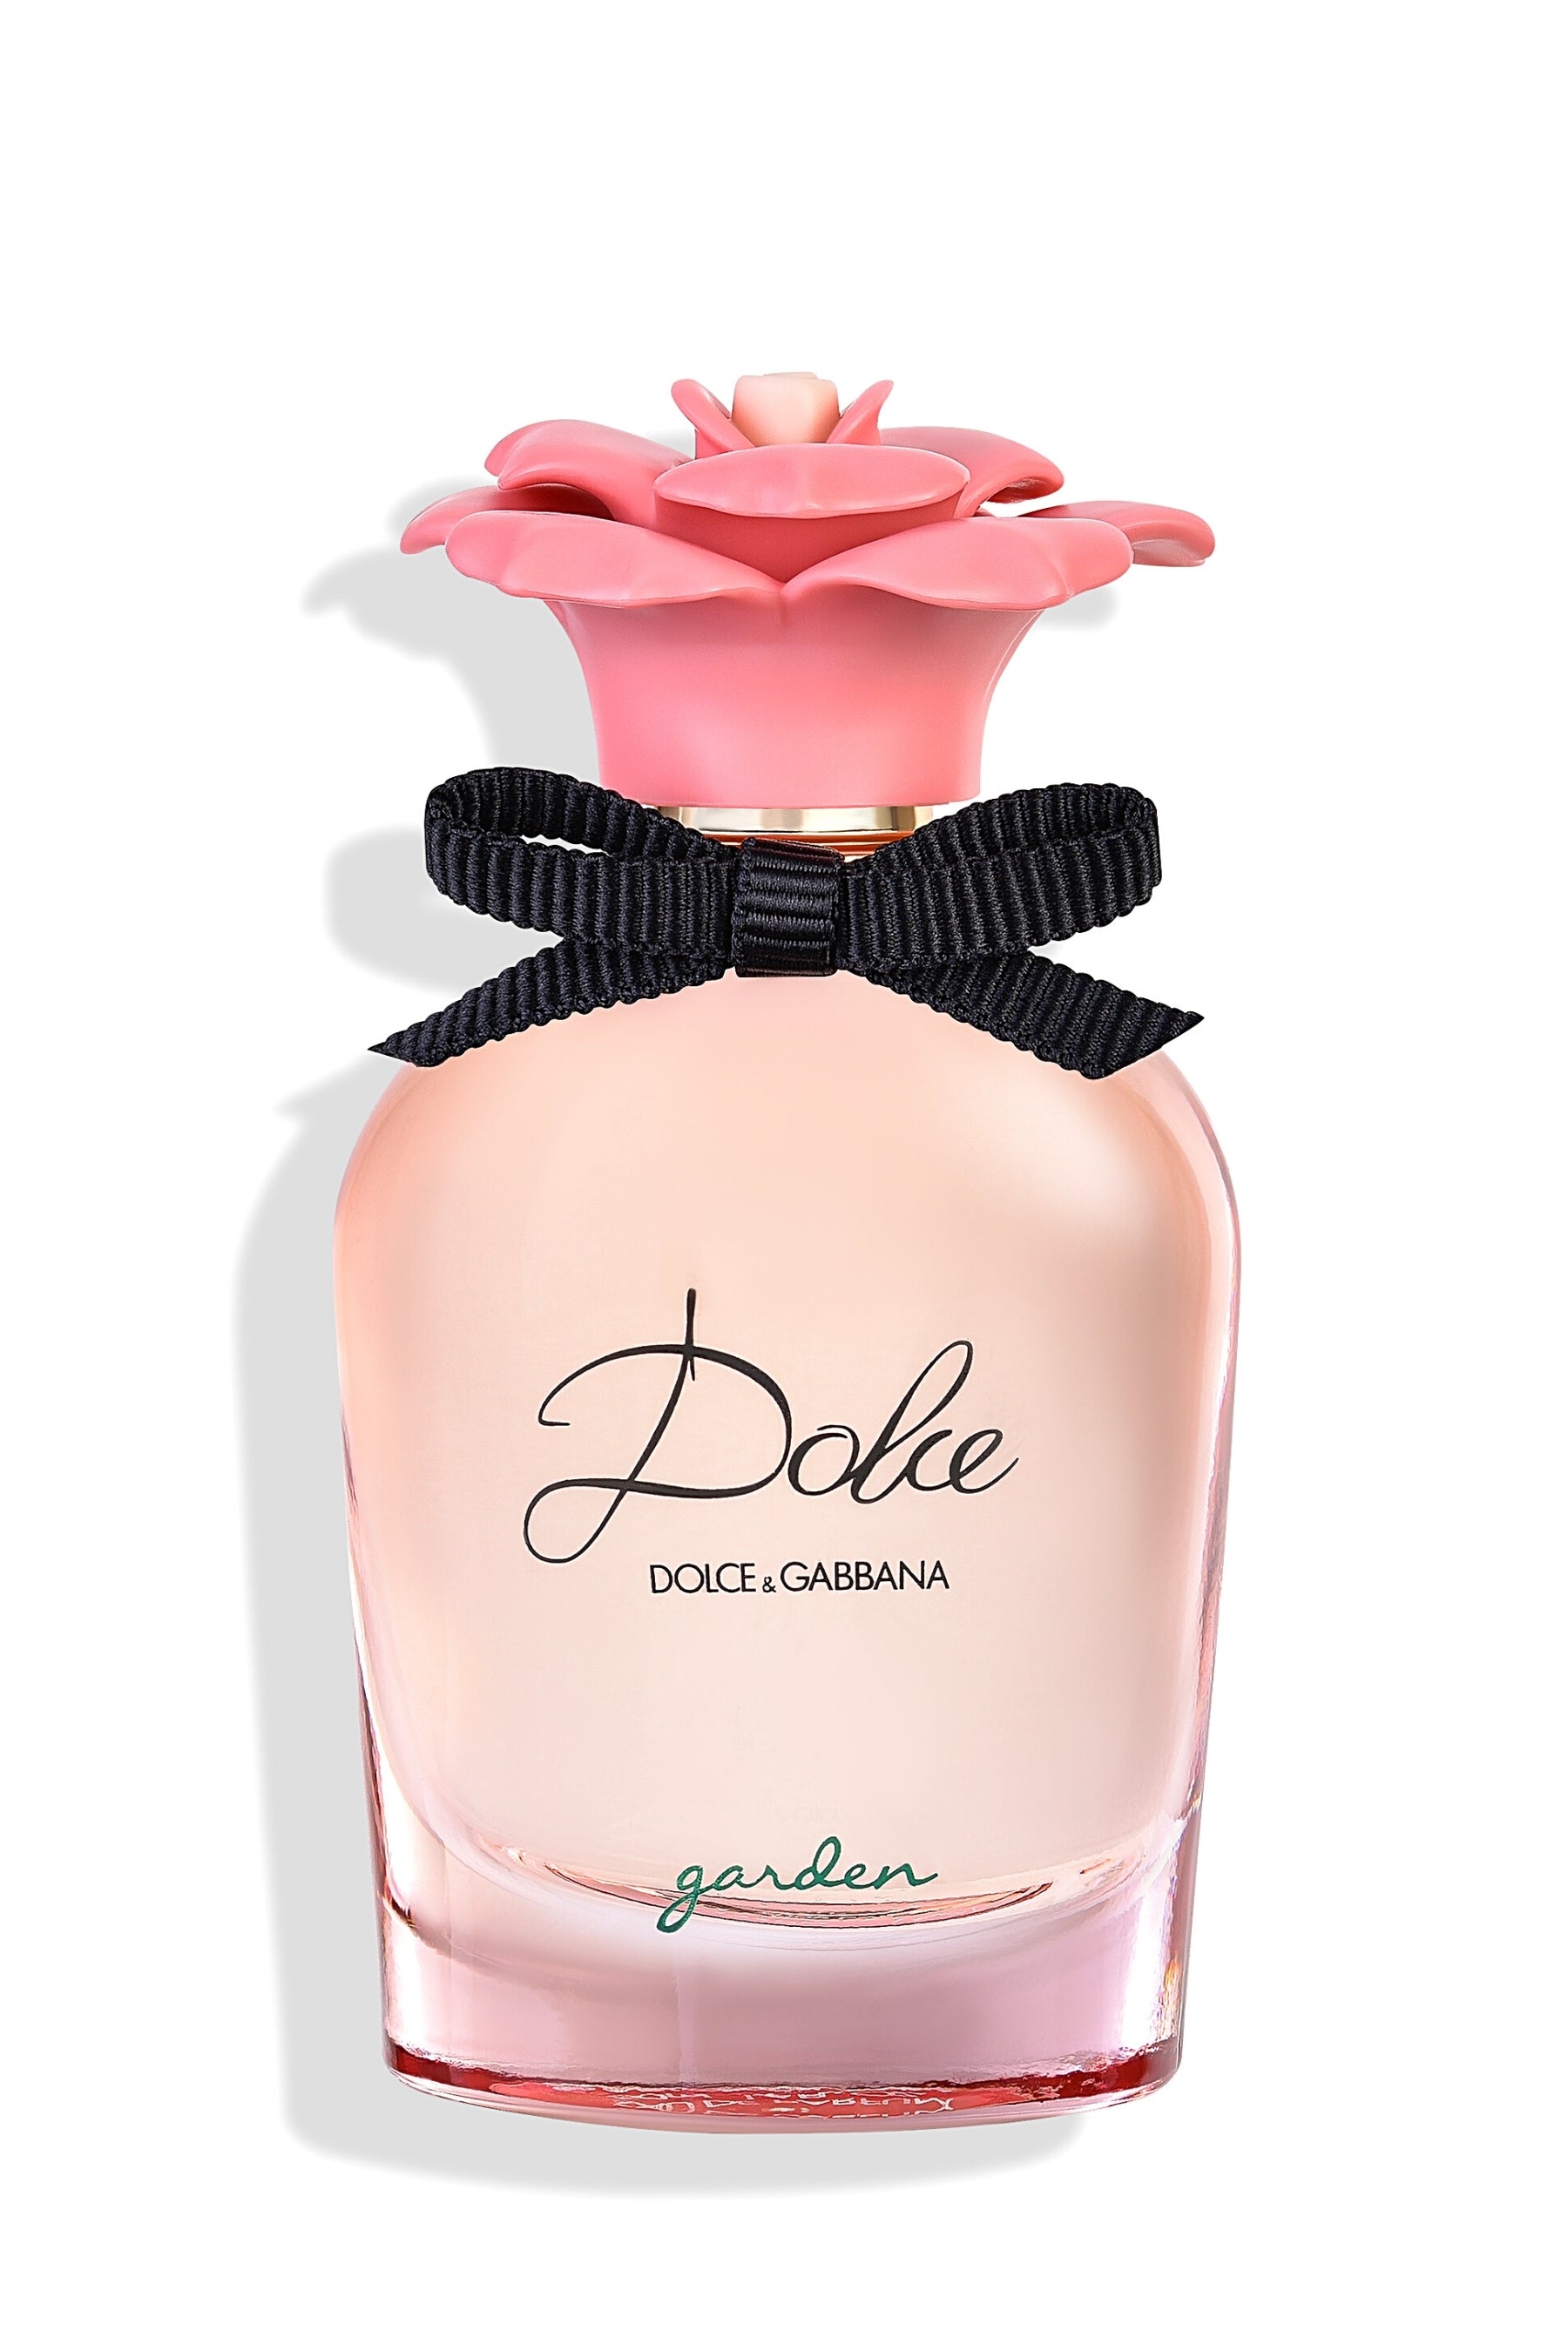  Dolce & Gabbana Dolce And Gabanna Dolce Garden for